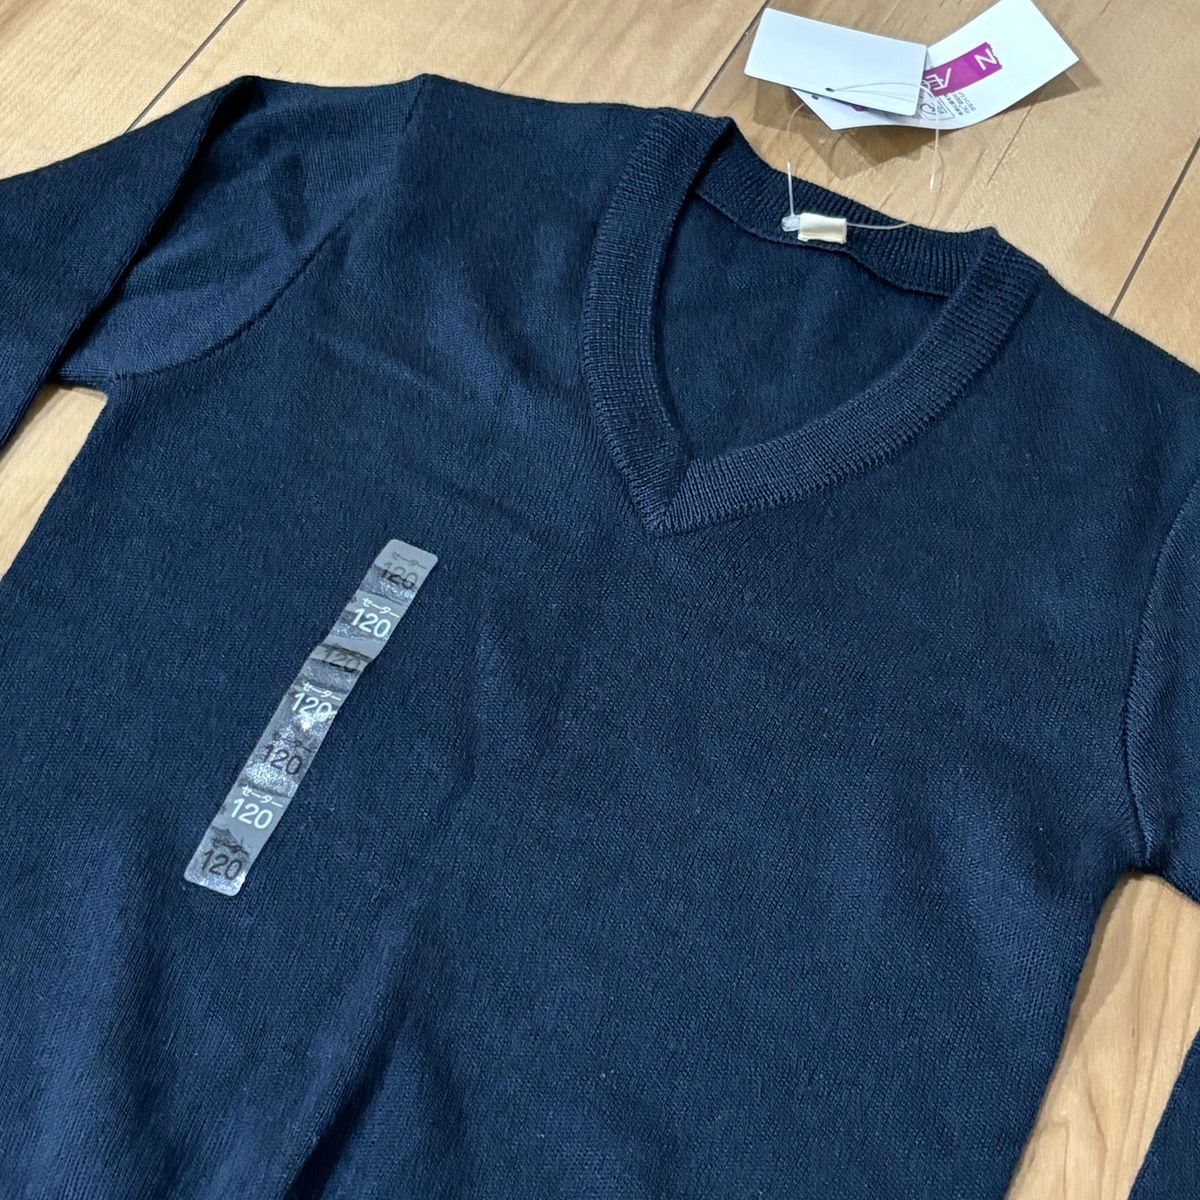 【新品未使用】サイズ120 Vネック ネイビー 紺 スクール セーター ②